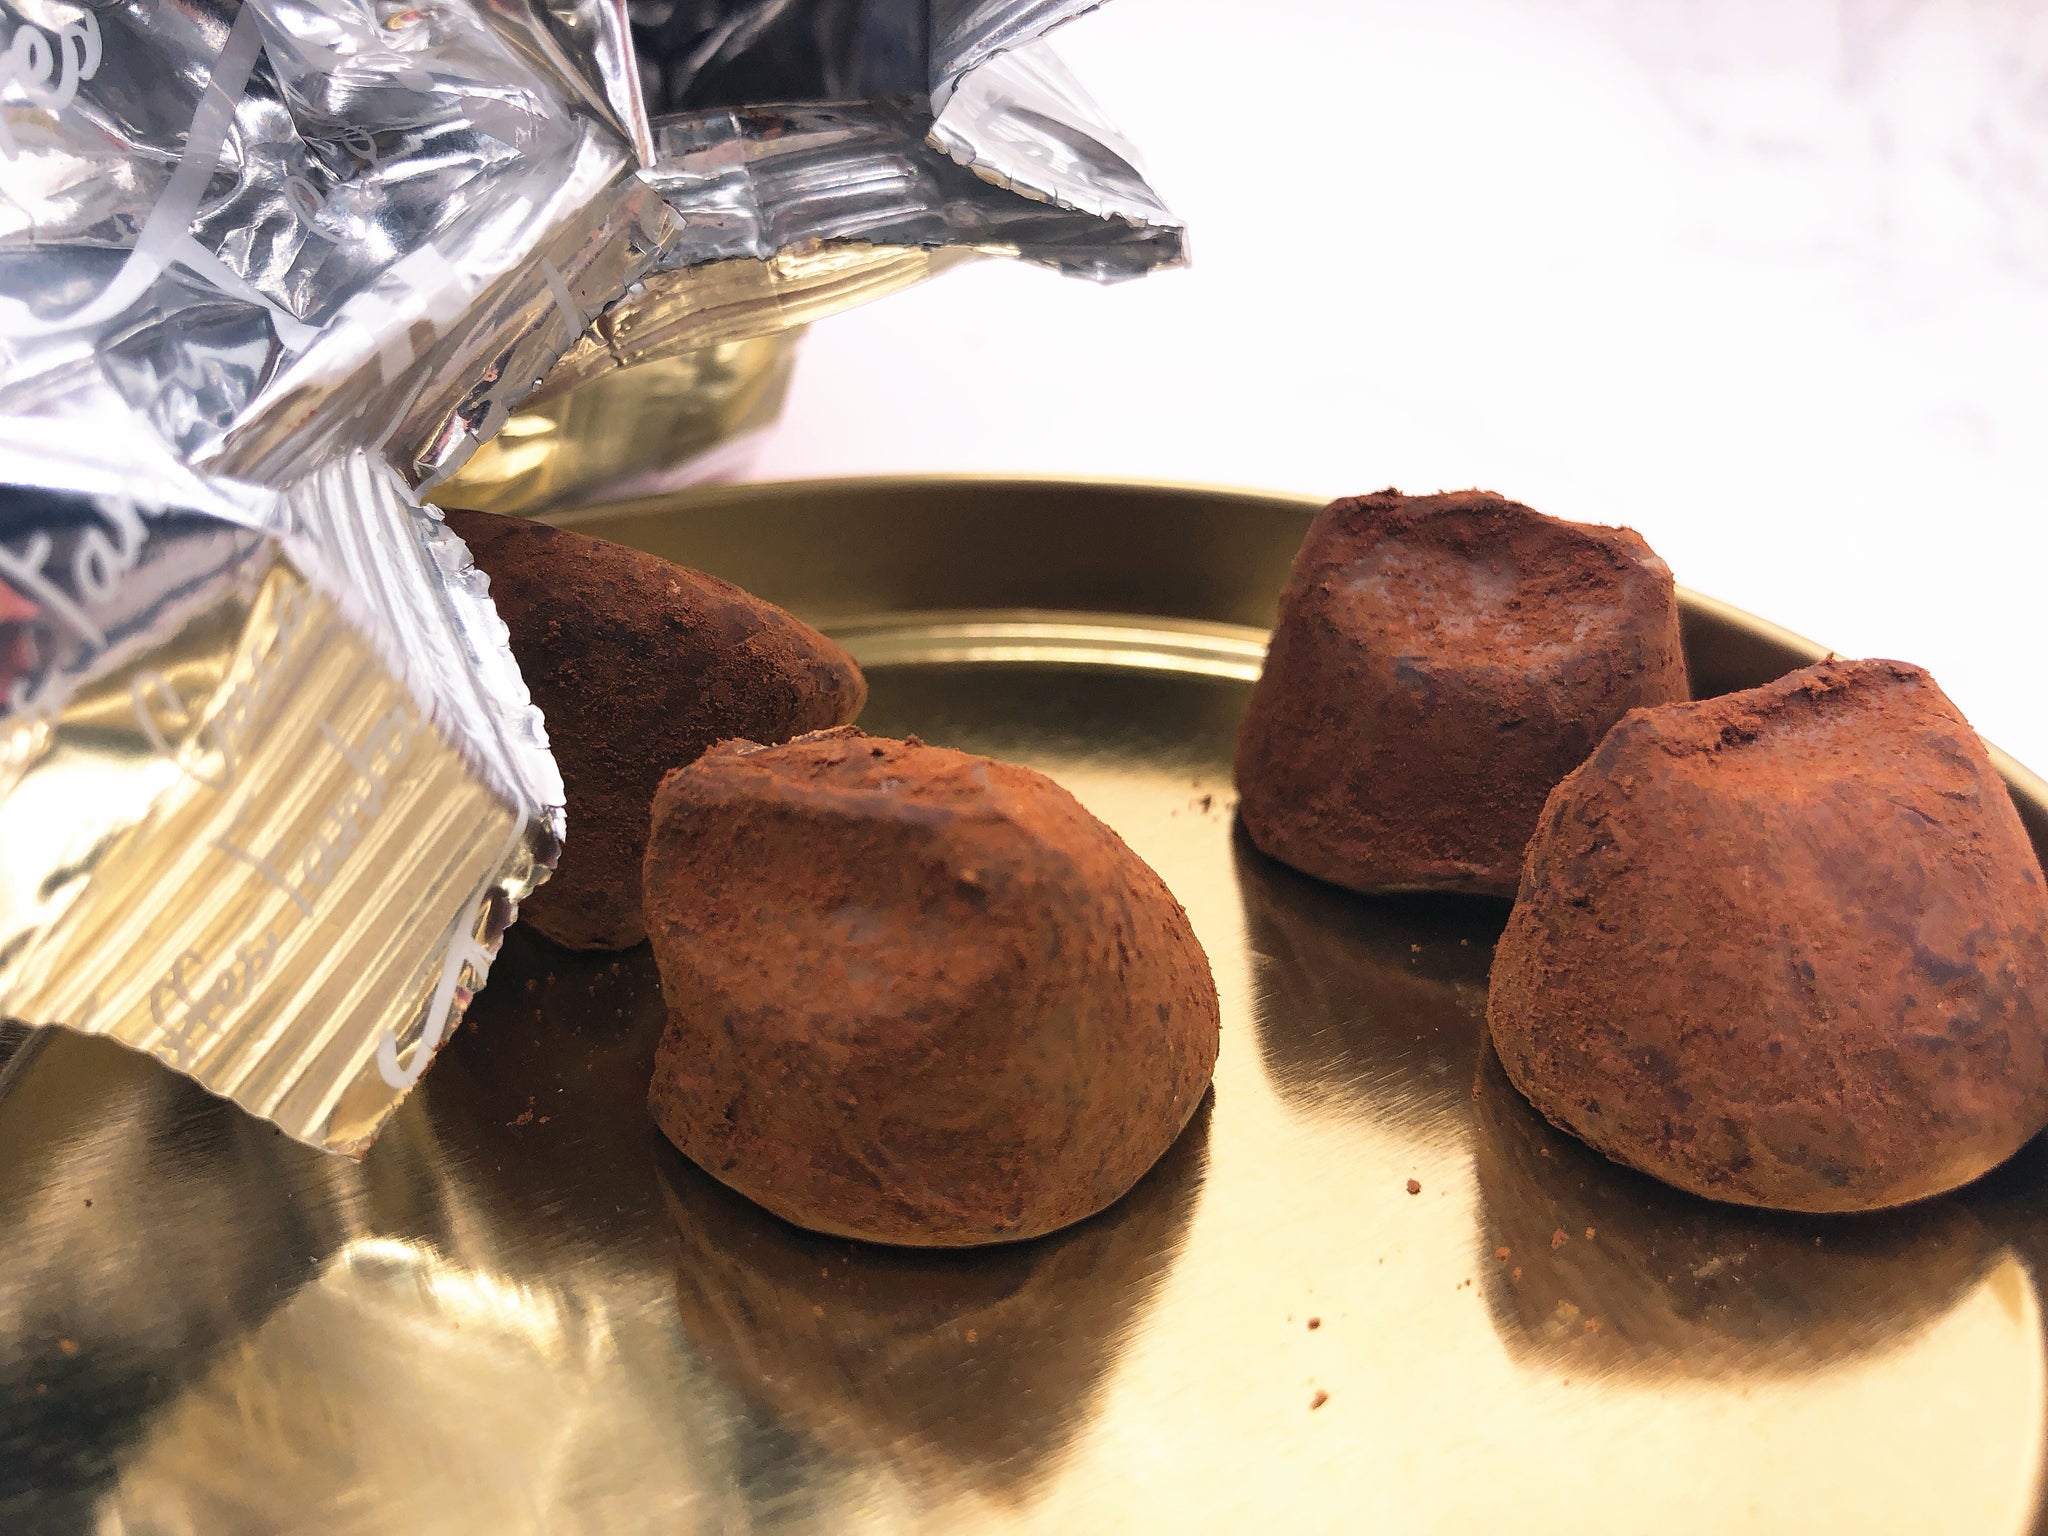 法国mathez松露巧克力 mathez french cocoa truffles